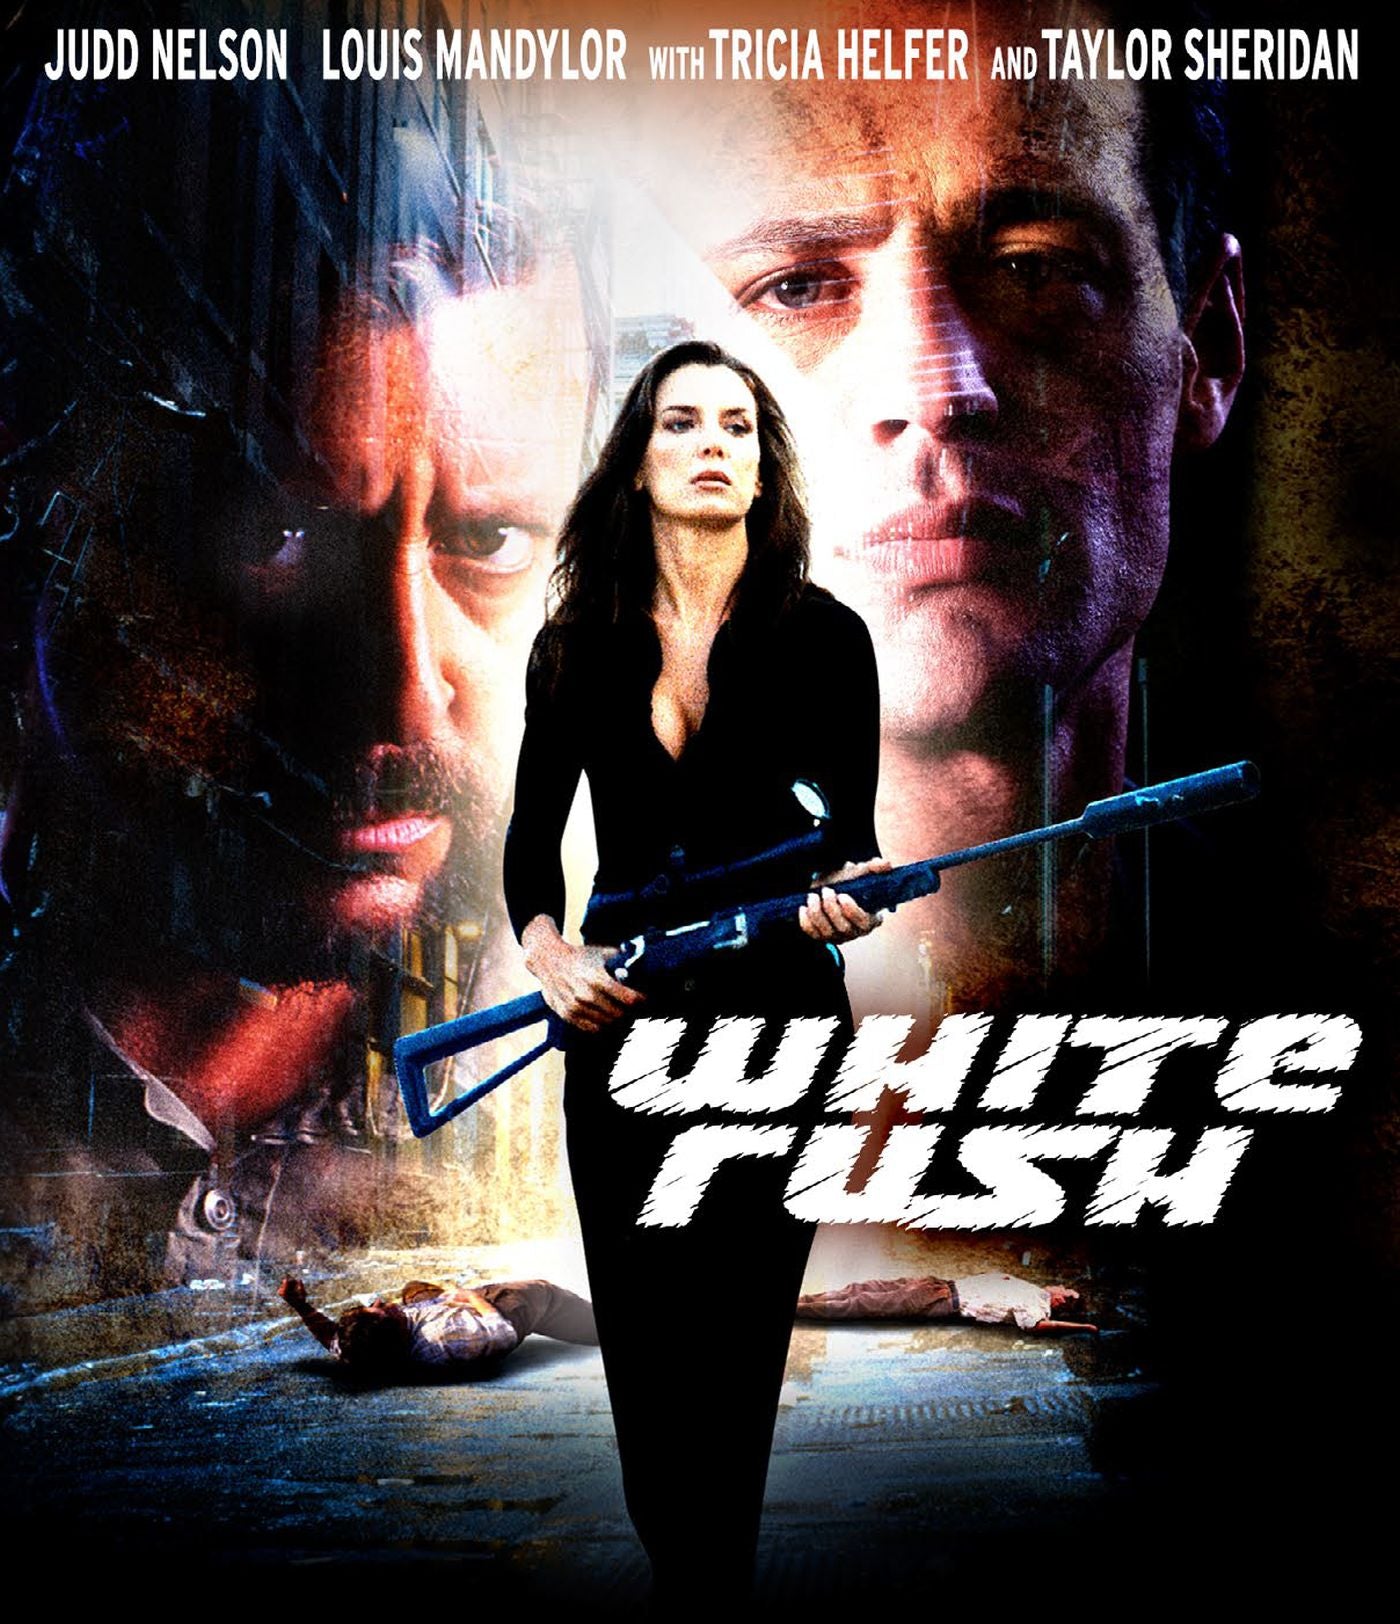 White Rush Dark Force Entertainment Blu-Ray [NEW]